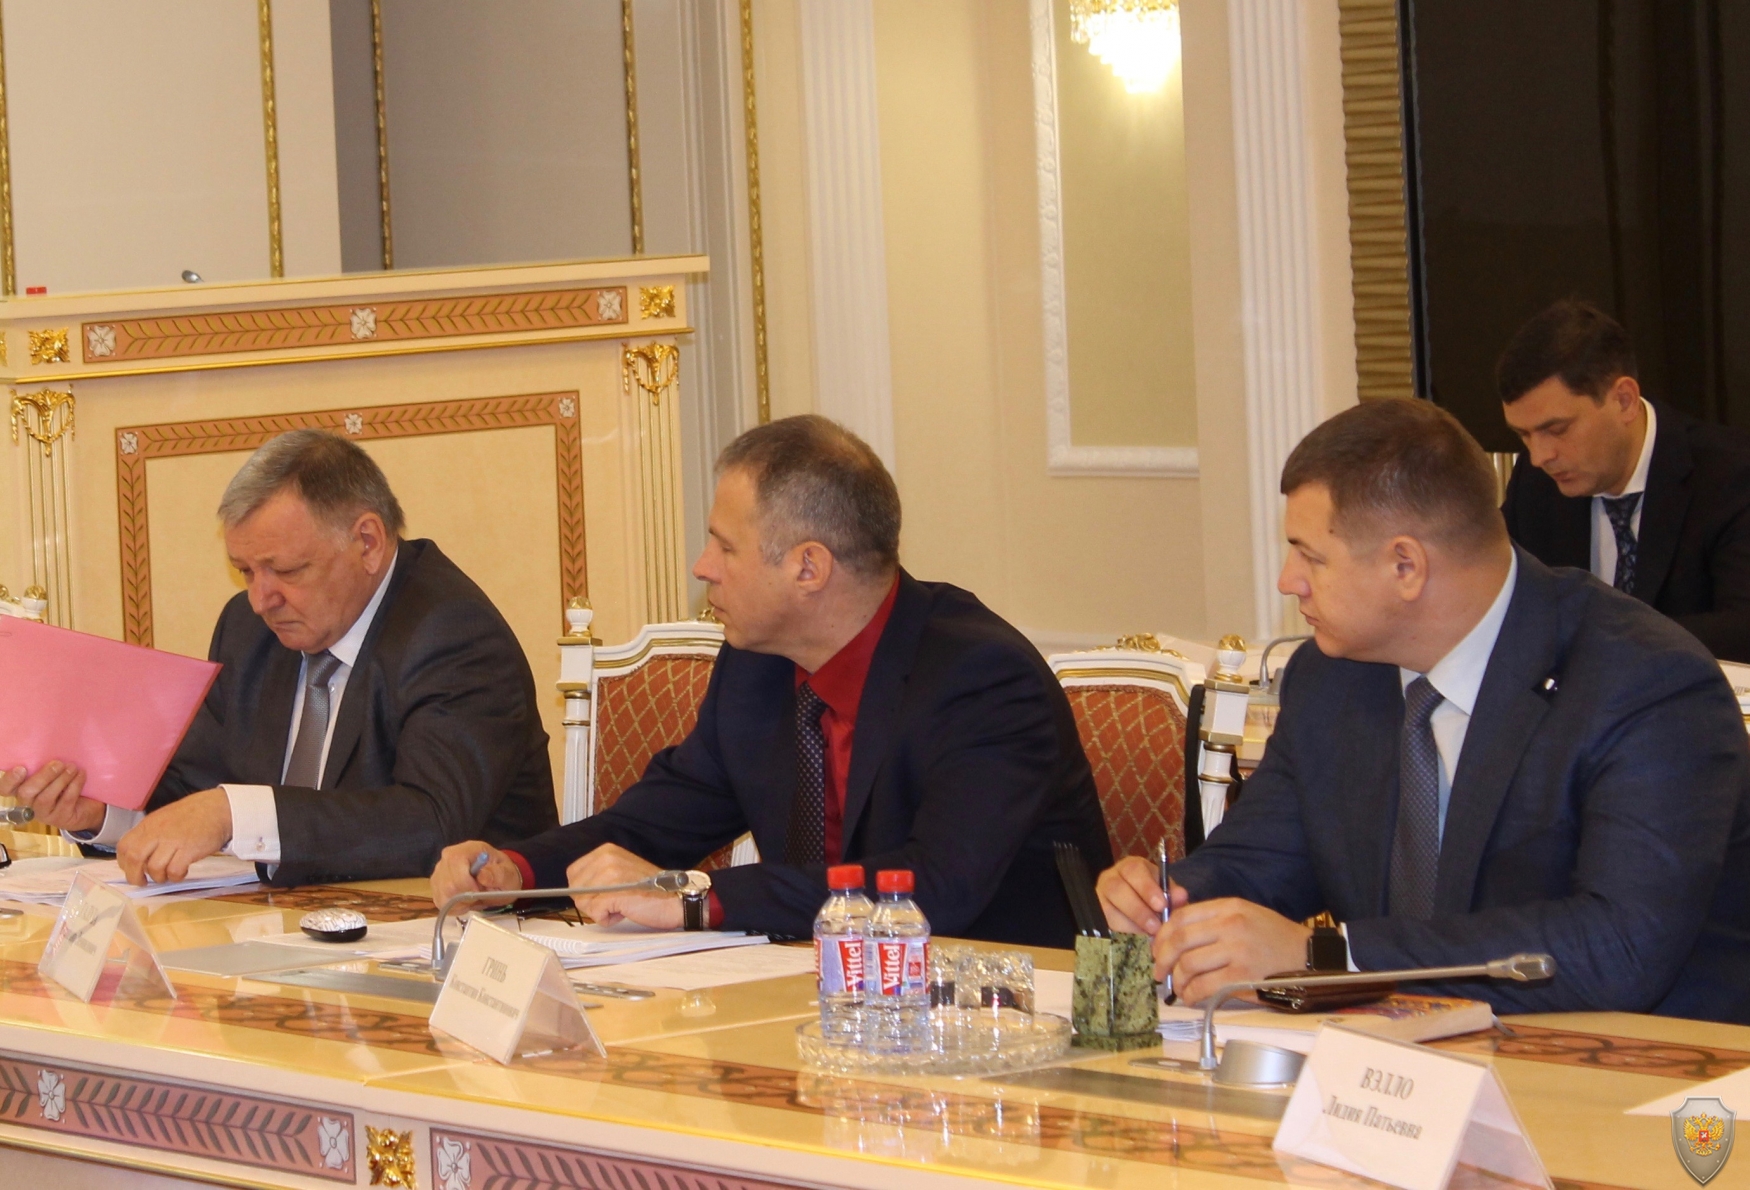 Андрей Гиберт –председатель избирательной комиссии Ямало-Ненецкого автономного округа докладывает о мерах по обеспечению антитеррористической безопасности